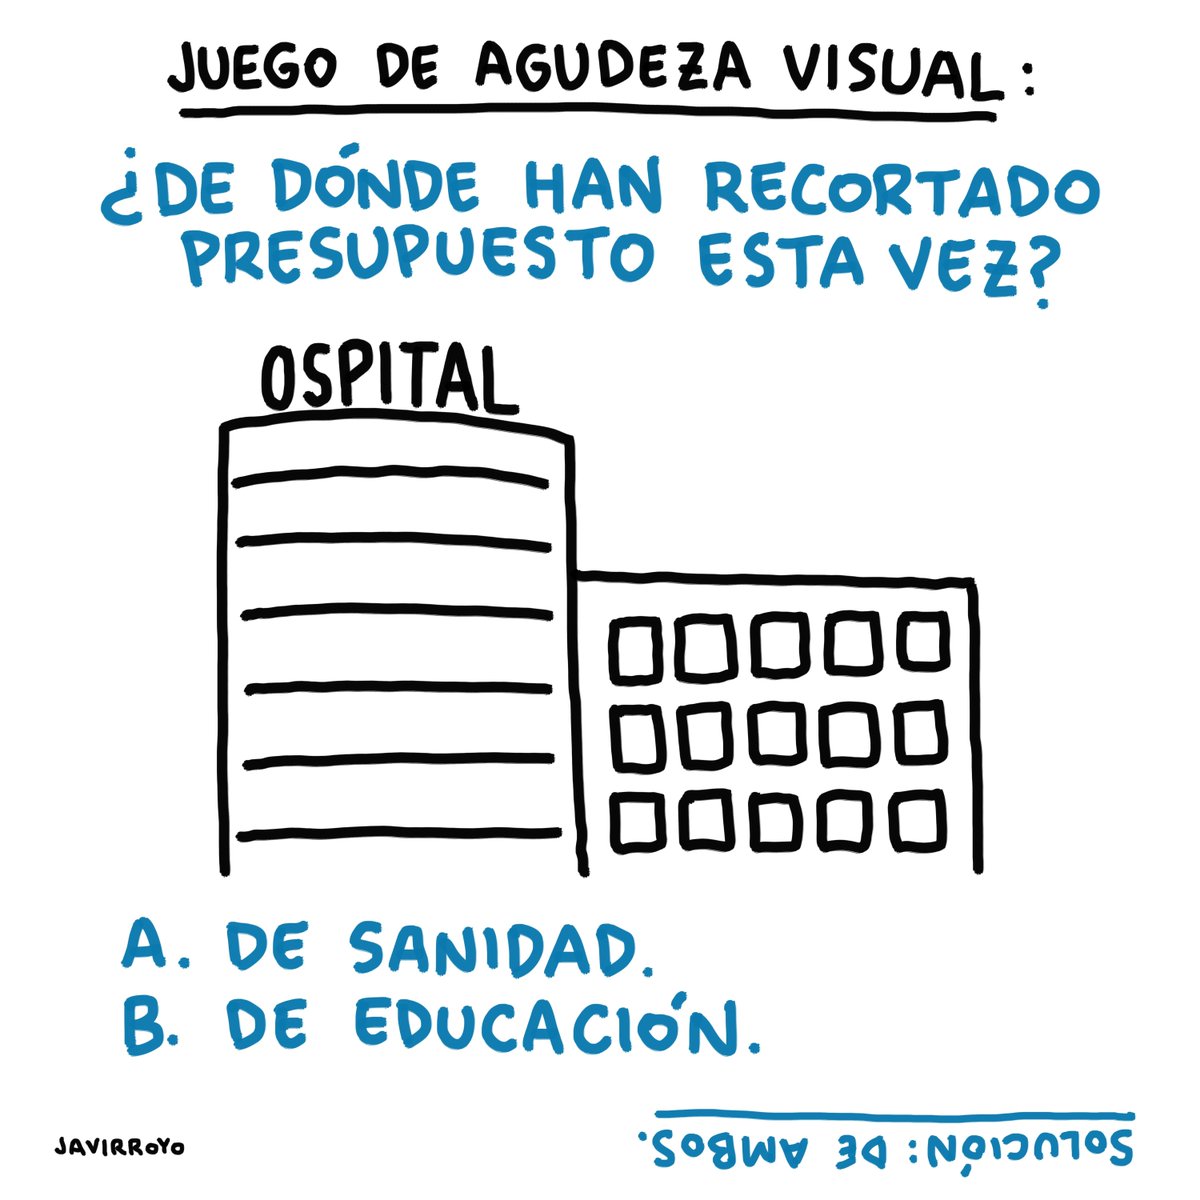 Juego de agudeza visual... . #recortes #sanidad #educacion #javirroyo